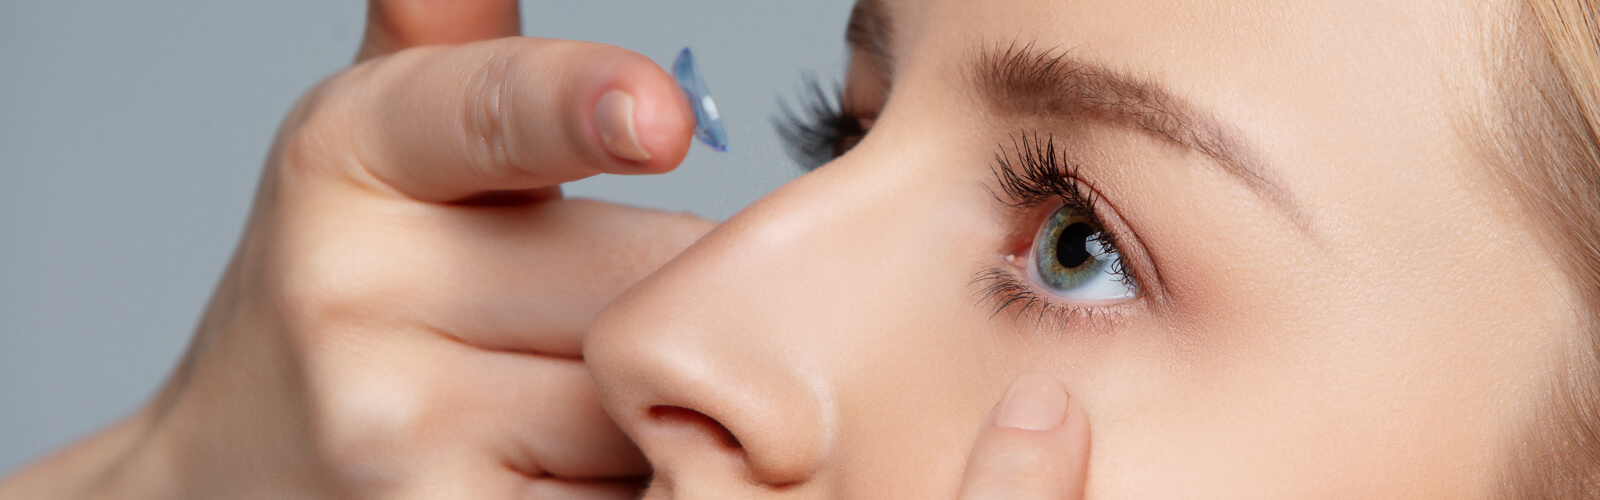 Anleitung für Anfänger mit farbigen Kontaktlinsen